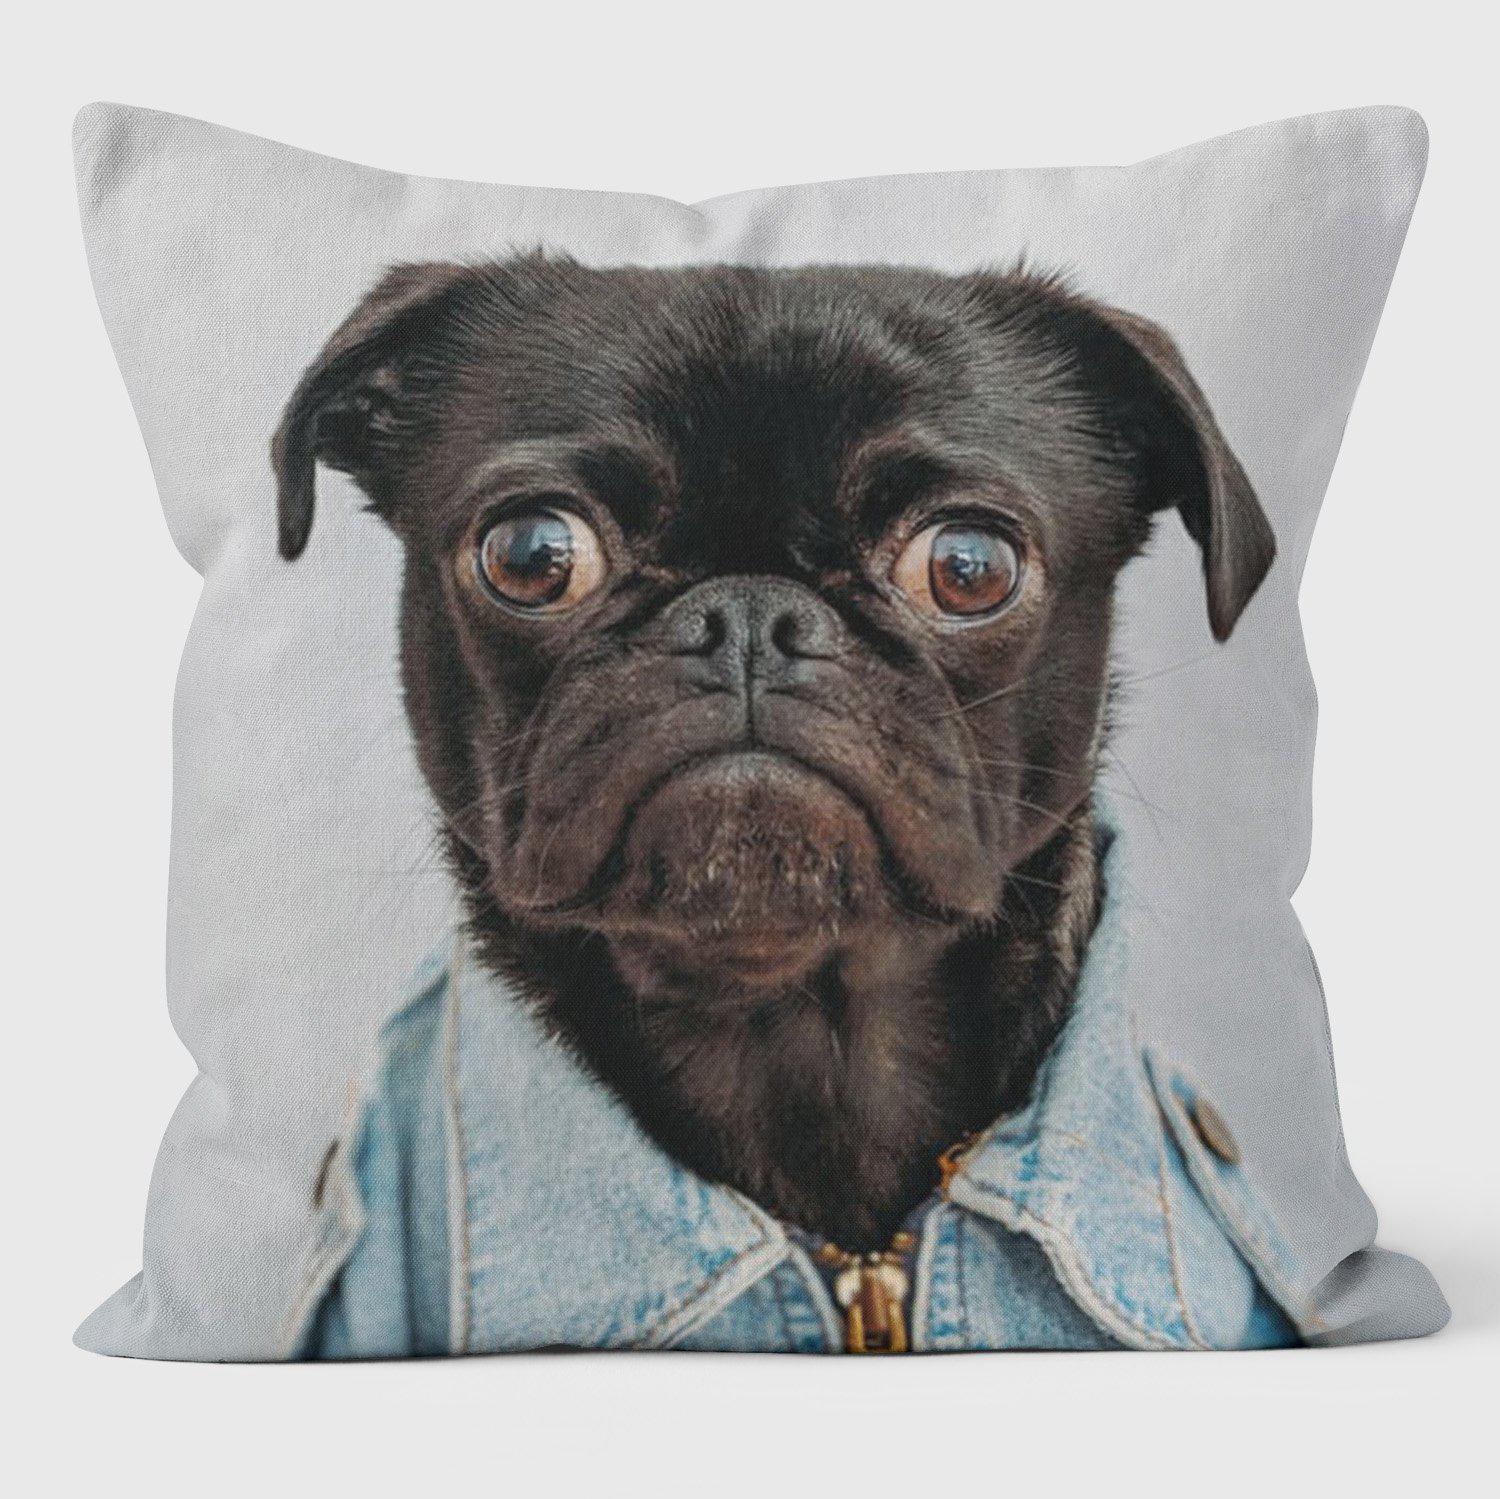 Single Image Photo Cushion Bespoke Pet Layout Service - Luxury Photo Gift - Handmade Cushions UK - WeLoveCushions